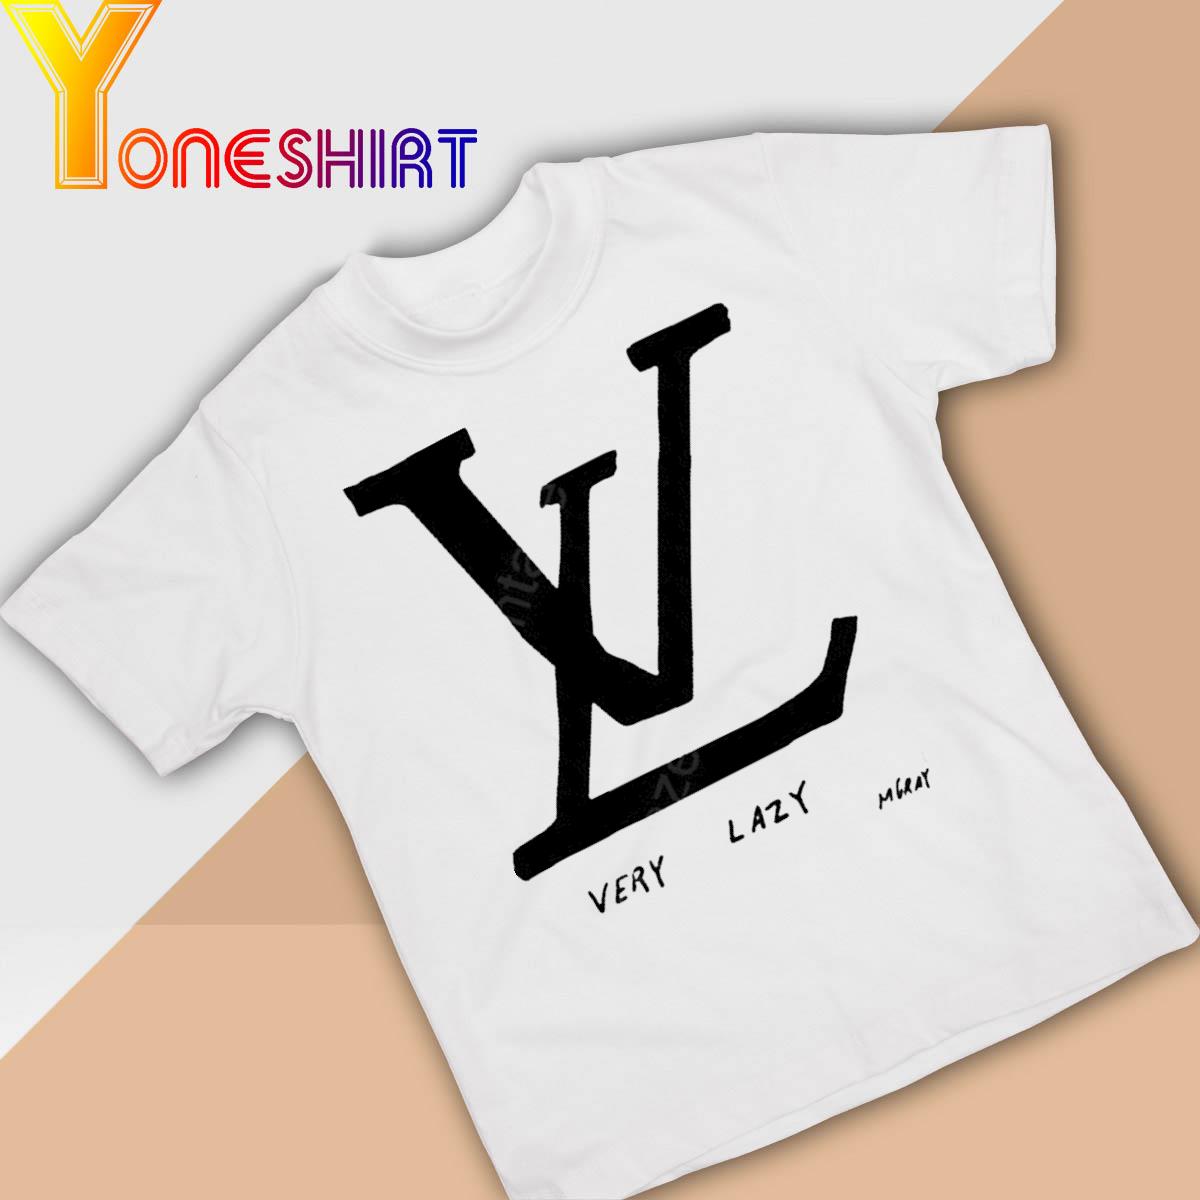 VL Very Lazy Mgray shirt